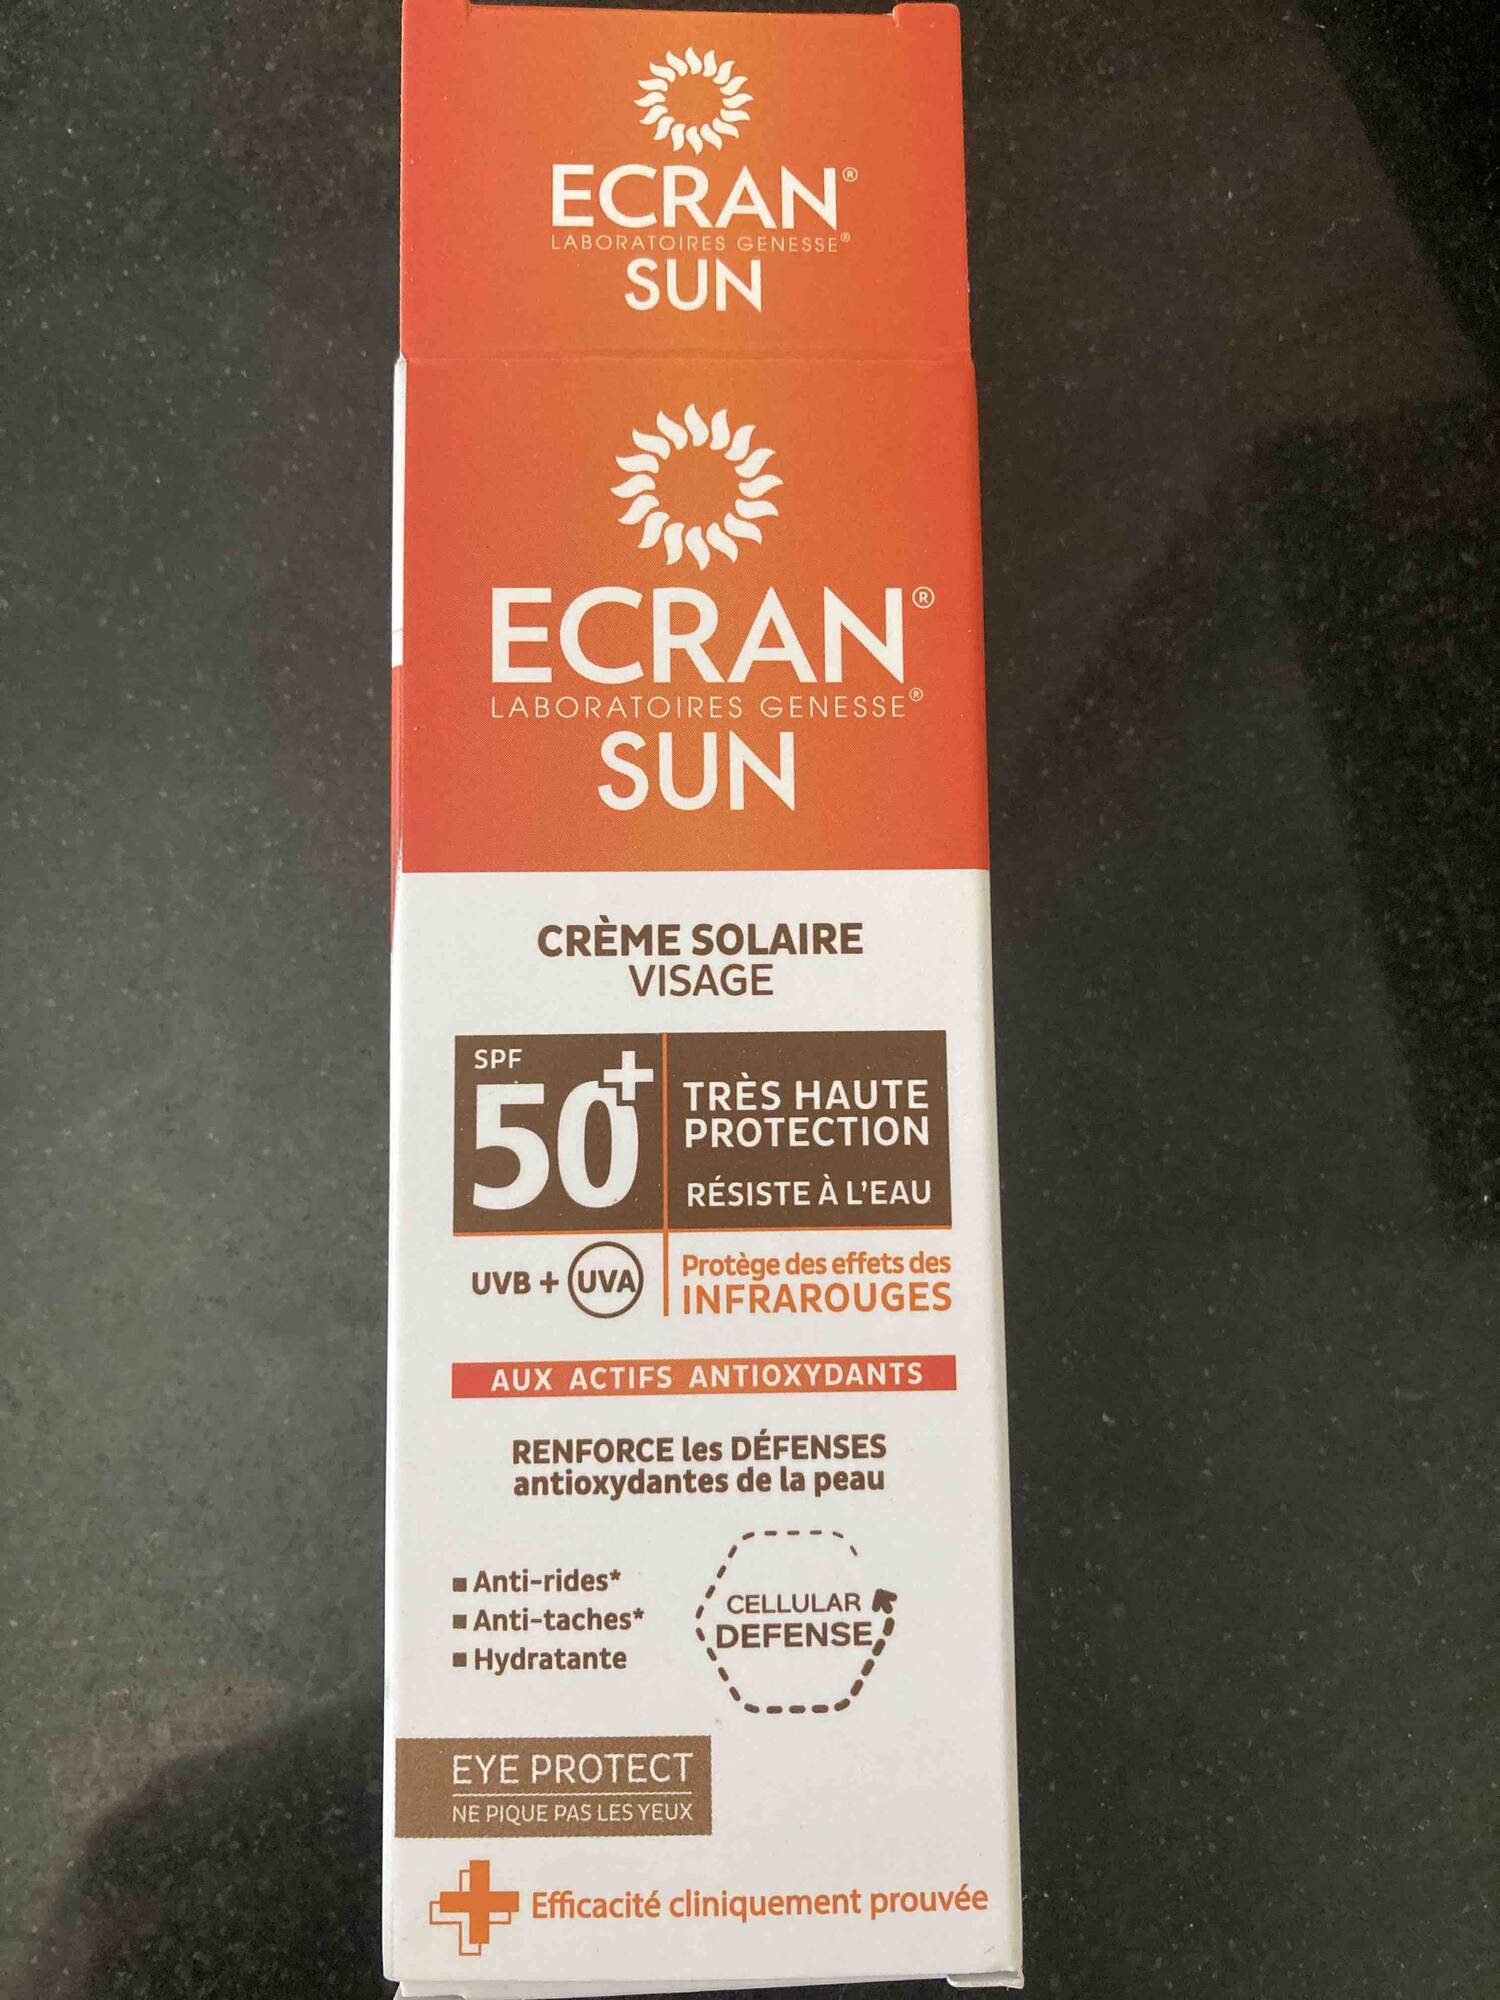 ECRAN LABORATOIRE GENESSE - Sun - Créme solaire visage SPF 50+